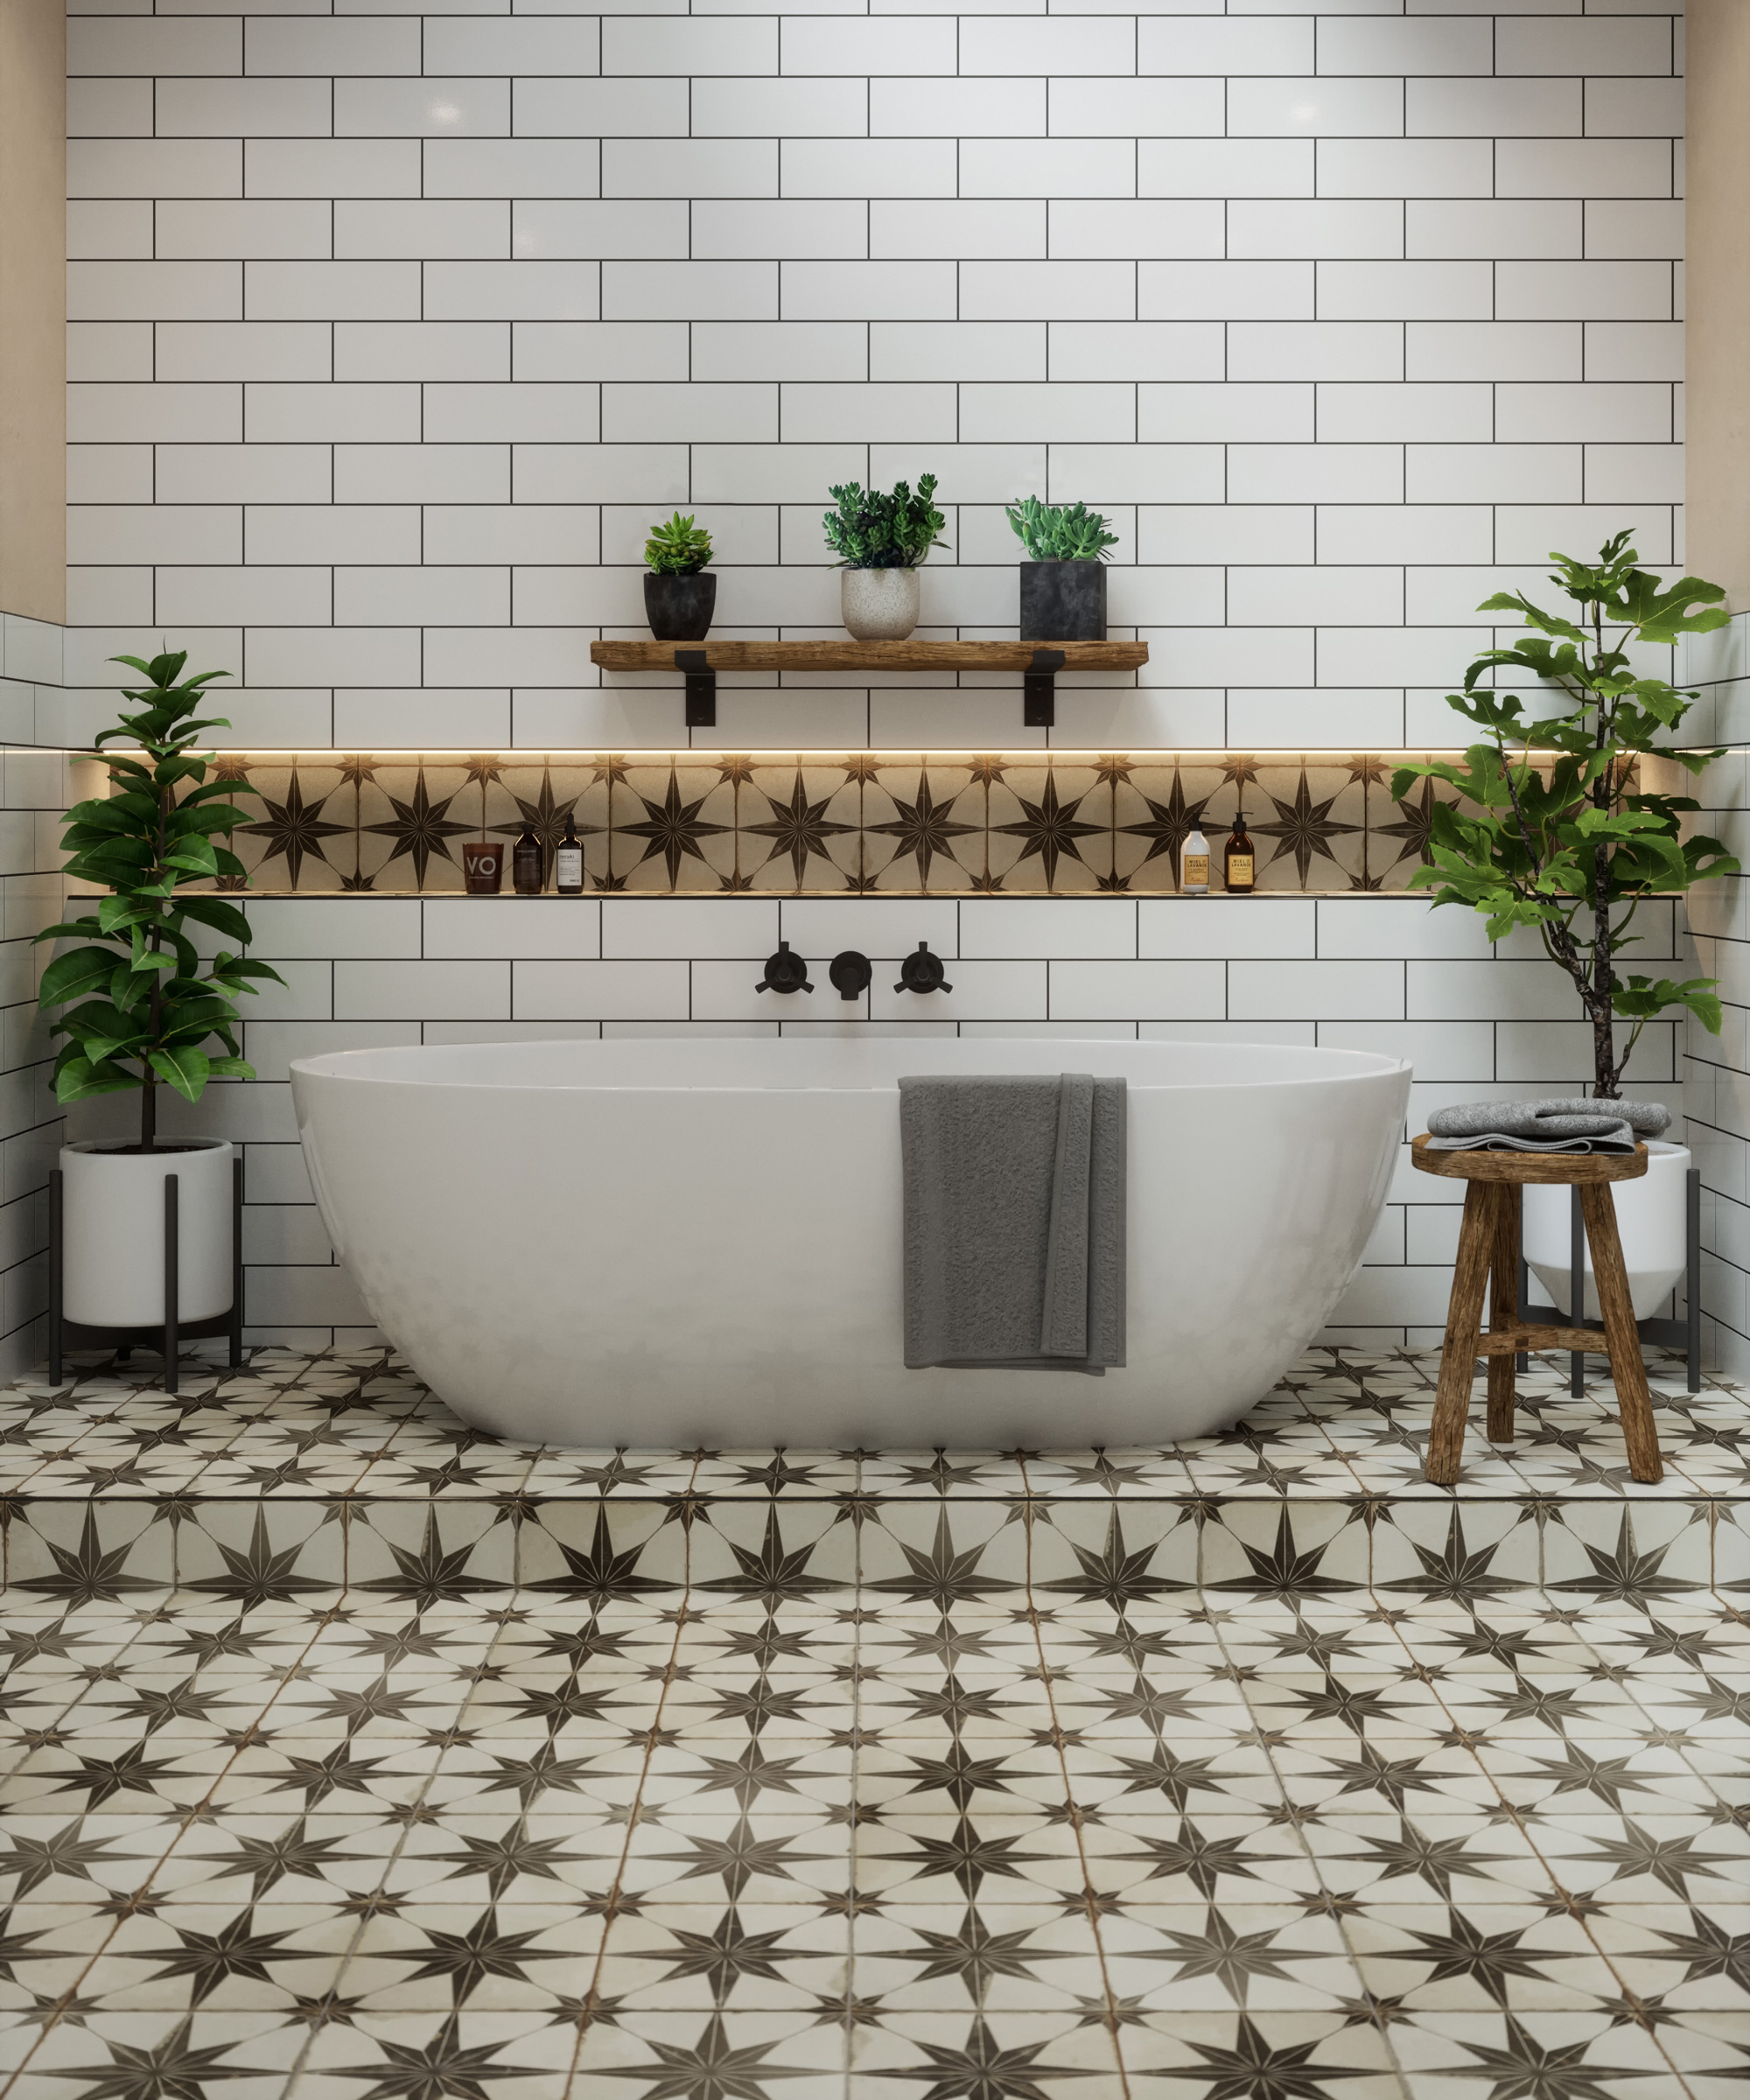 Bathroom Tile Ideas 32 New Looks To, Vintage Bathroom Floor Tile Ideas